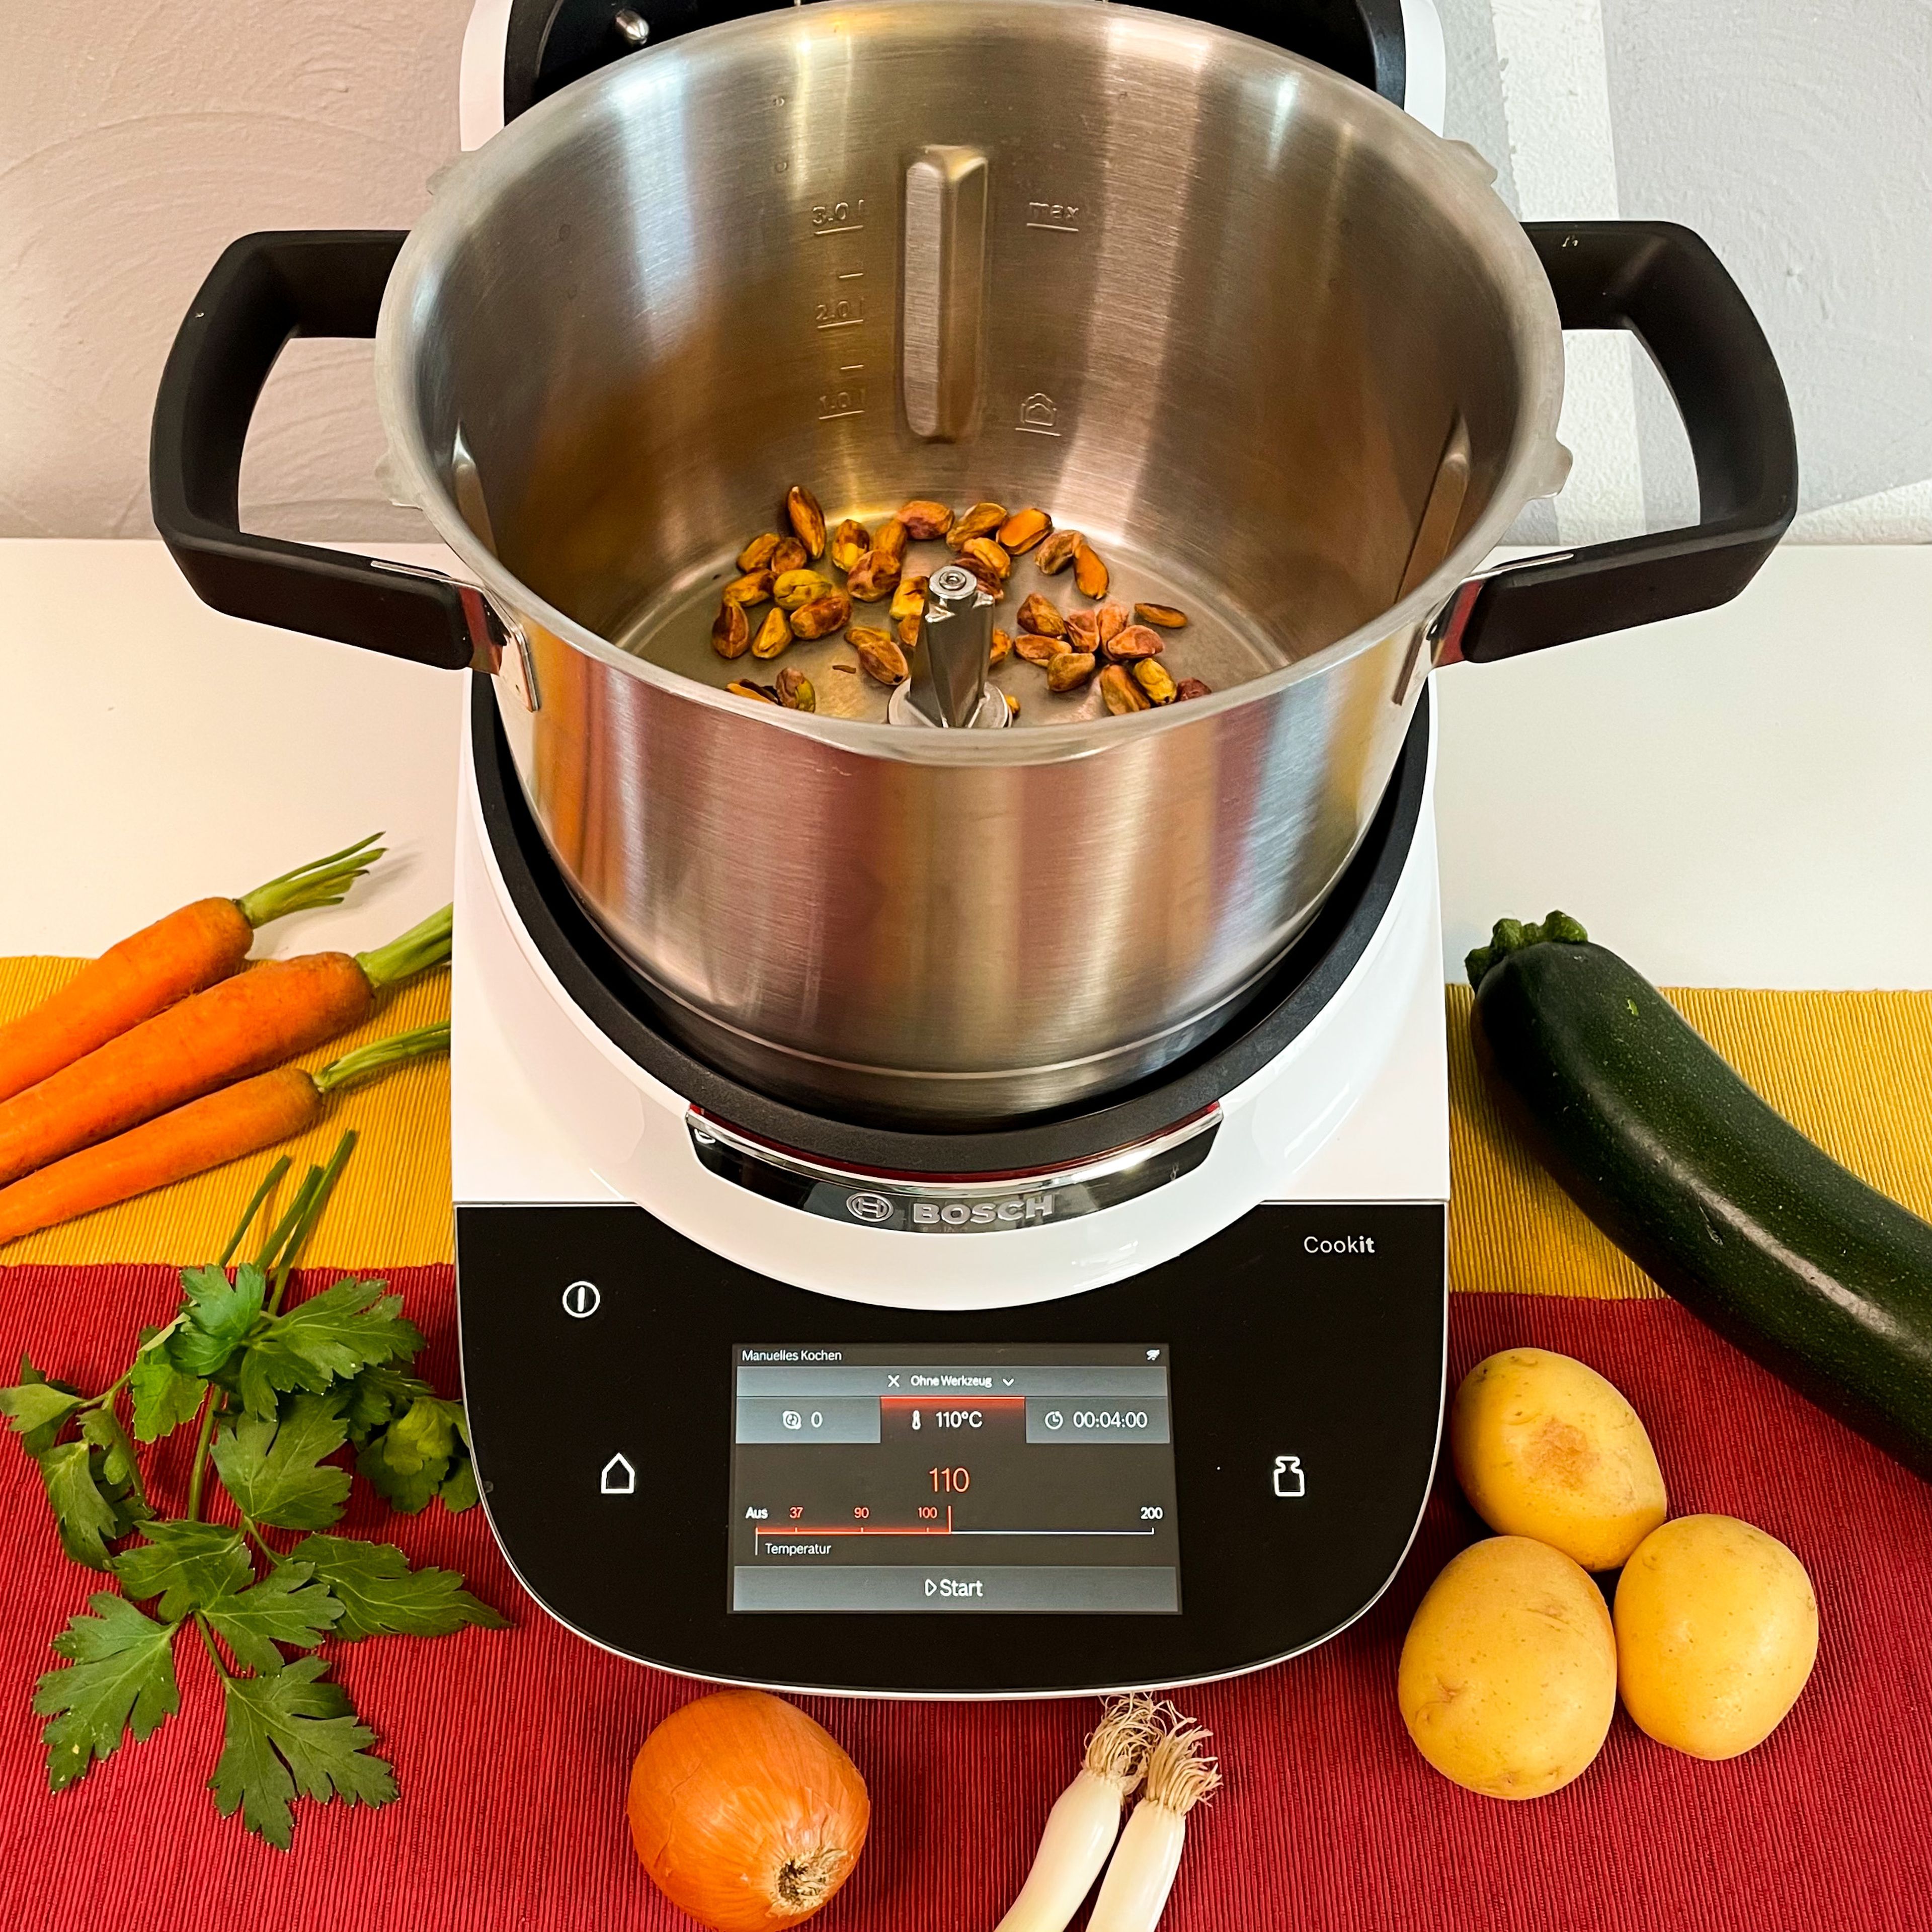 Pistazien in den Bosch Cookit geben und unter regelmäßigem Bewegen mit dem Cookit Küchenspatel anrösten, bis sie eine leichte Bräune bekommen (ohne Werkzeug | 98°C | ca. 5 min).